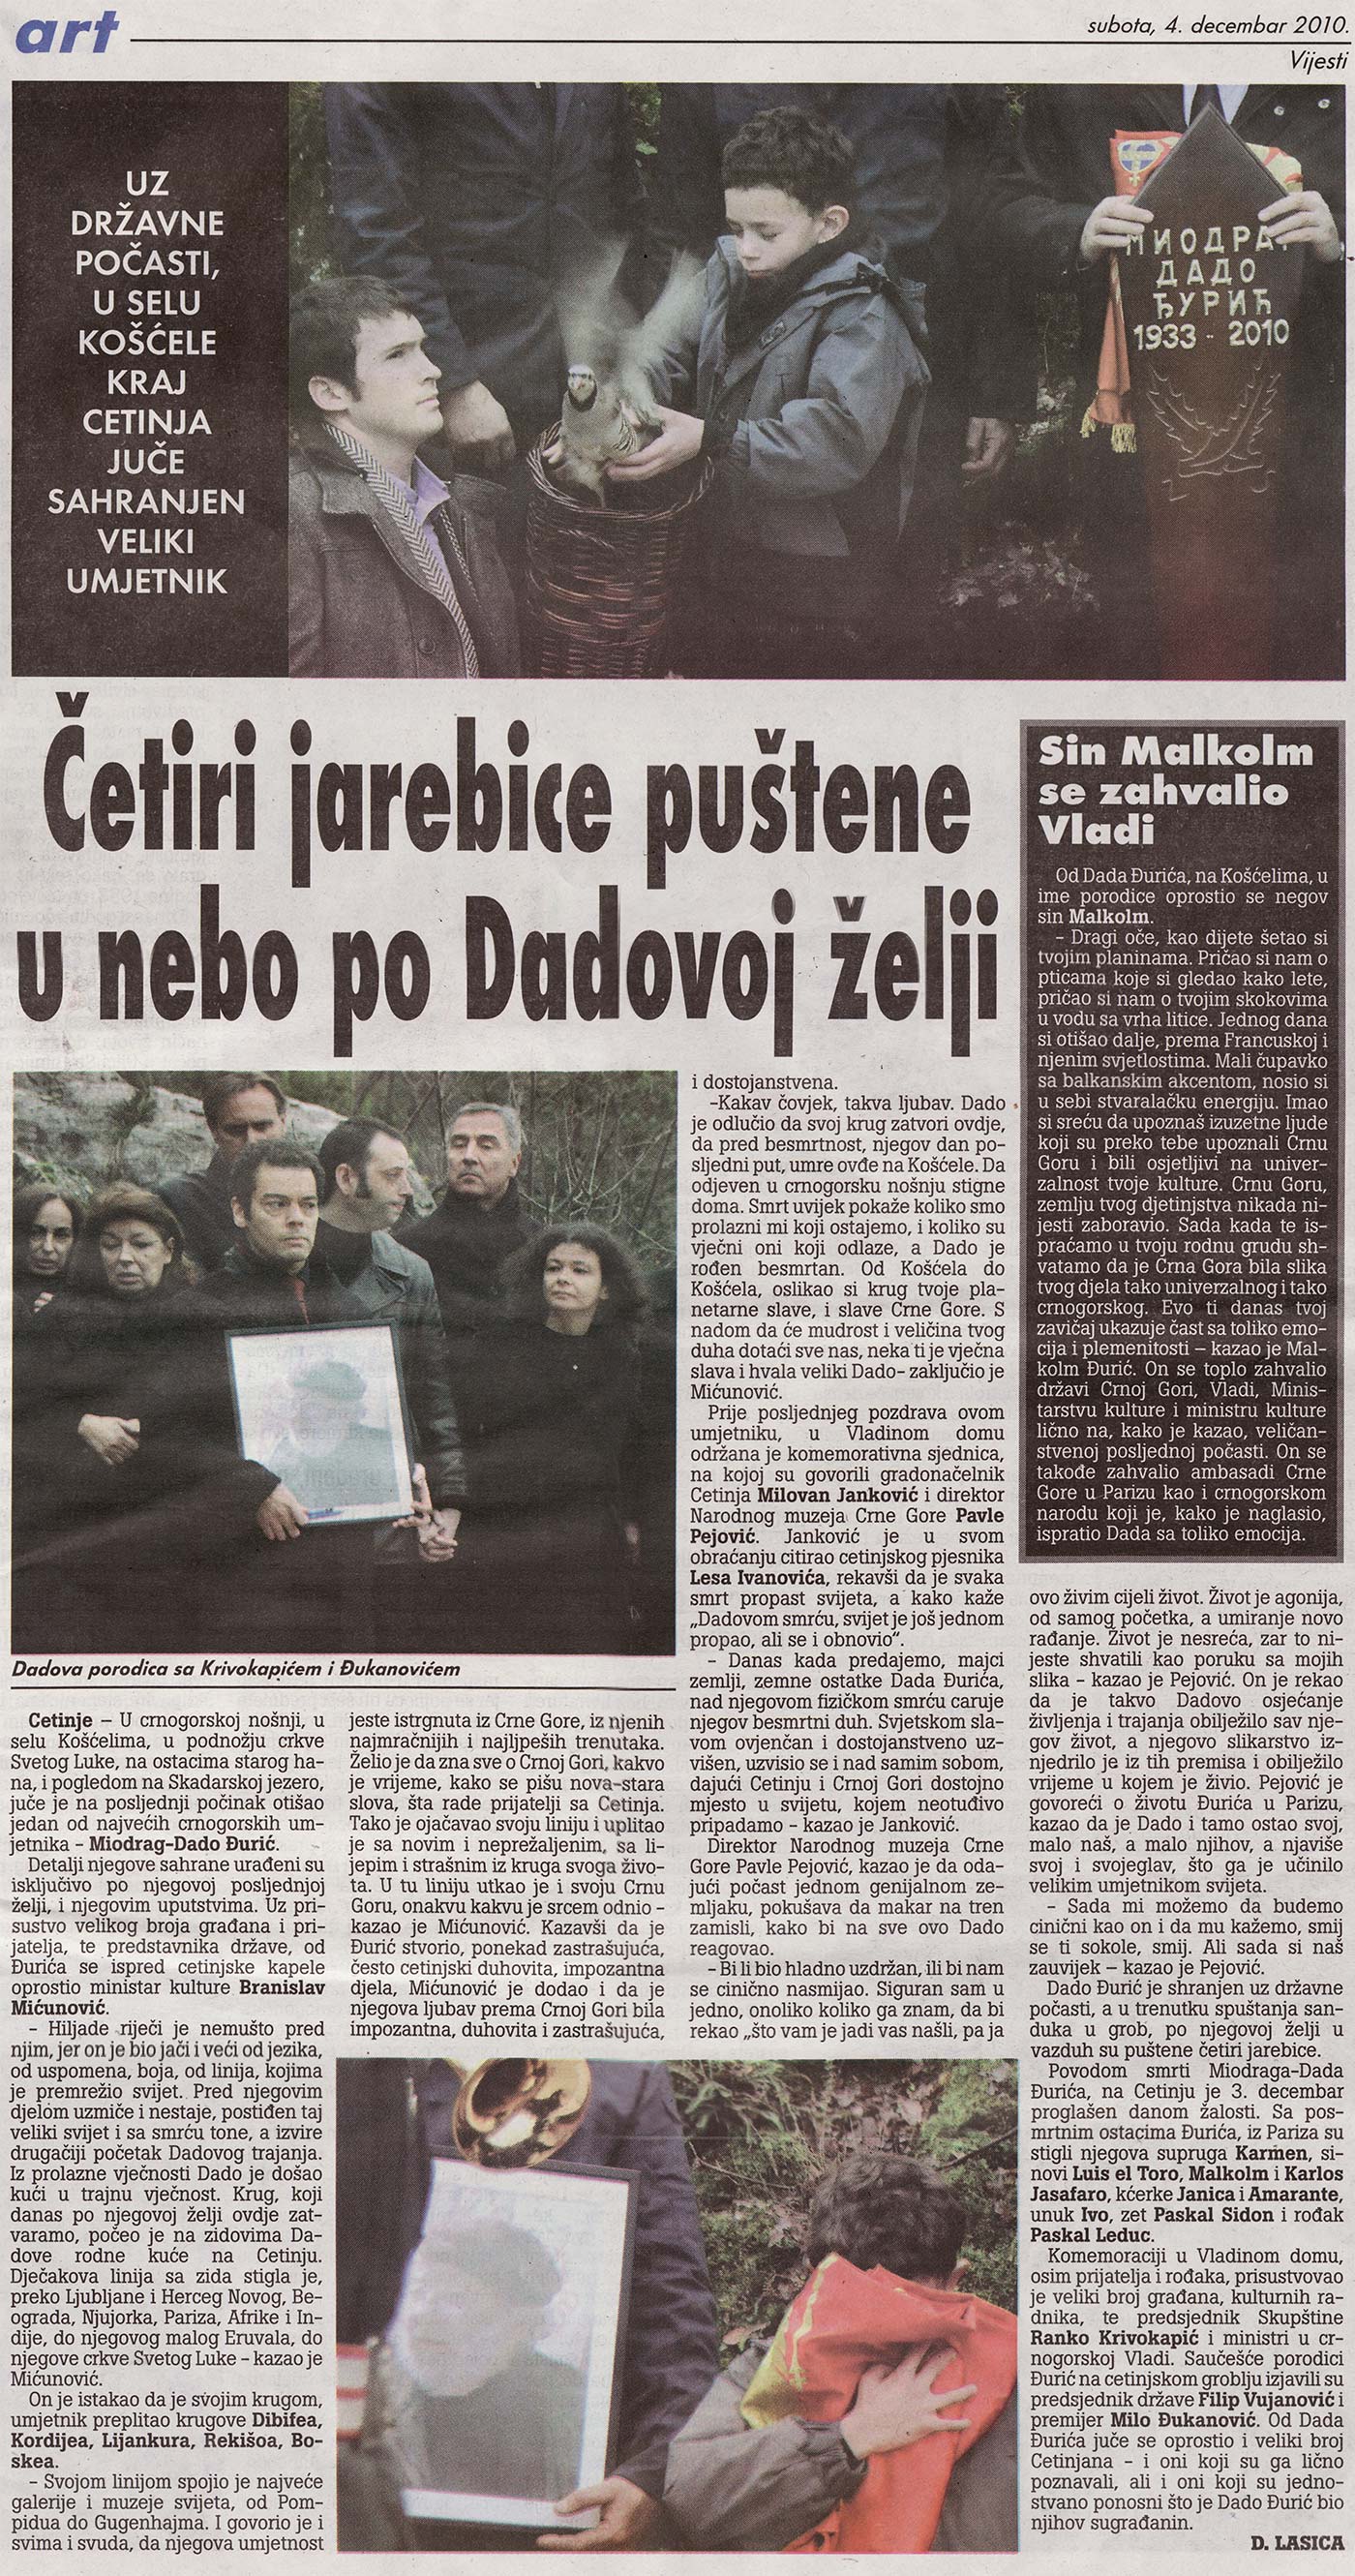 Journal Vijesti du 4 décembre 2010